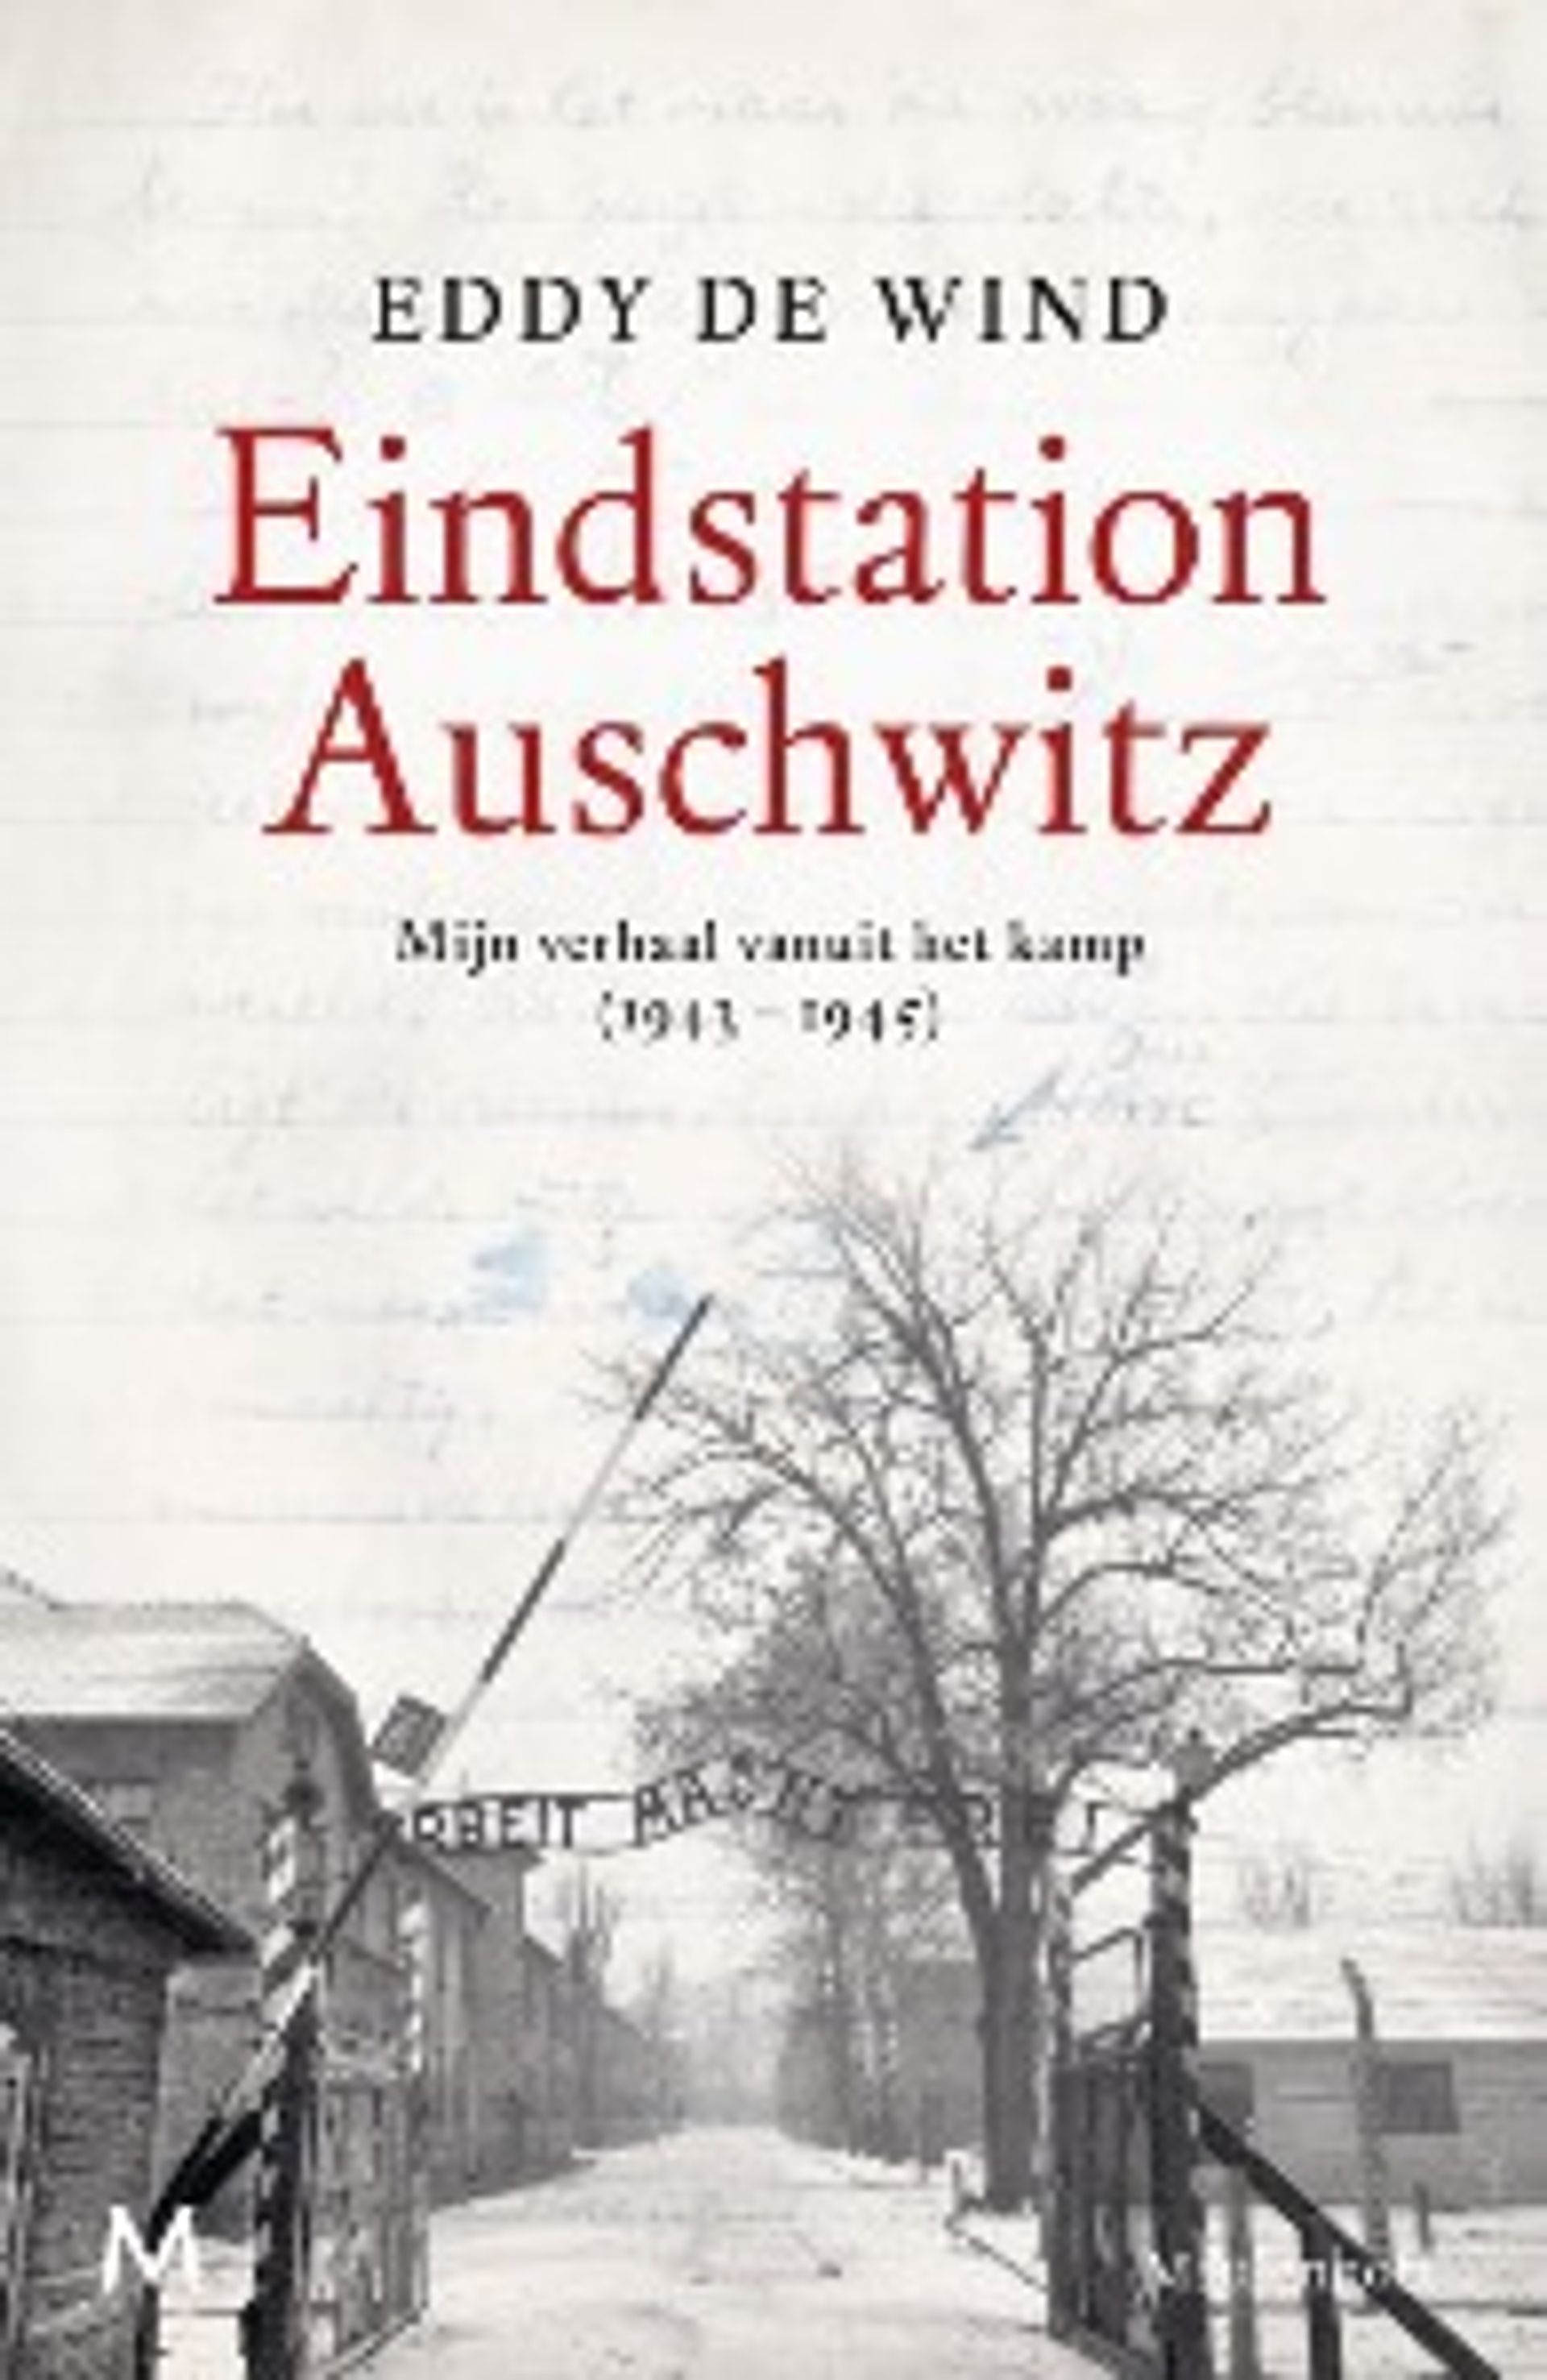 Boek eindstation Auschwitz